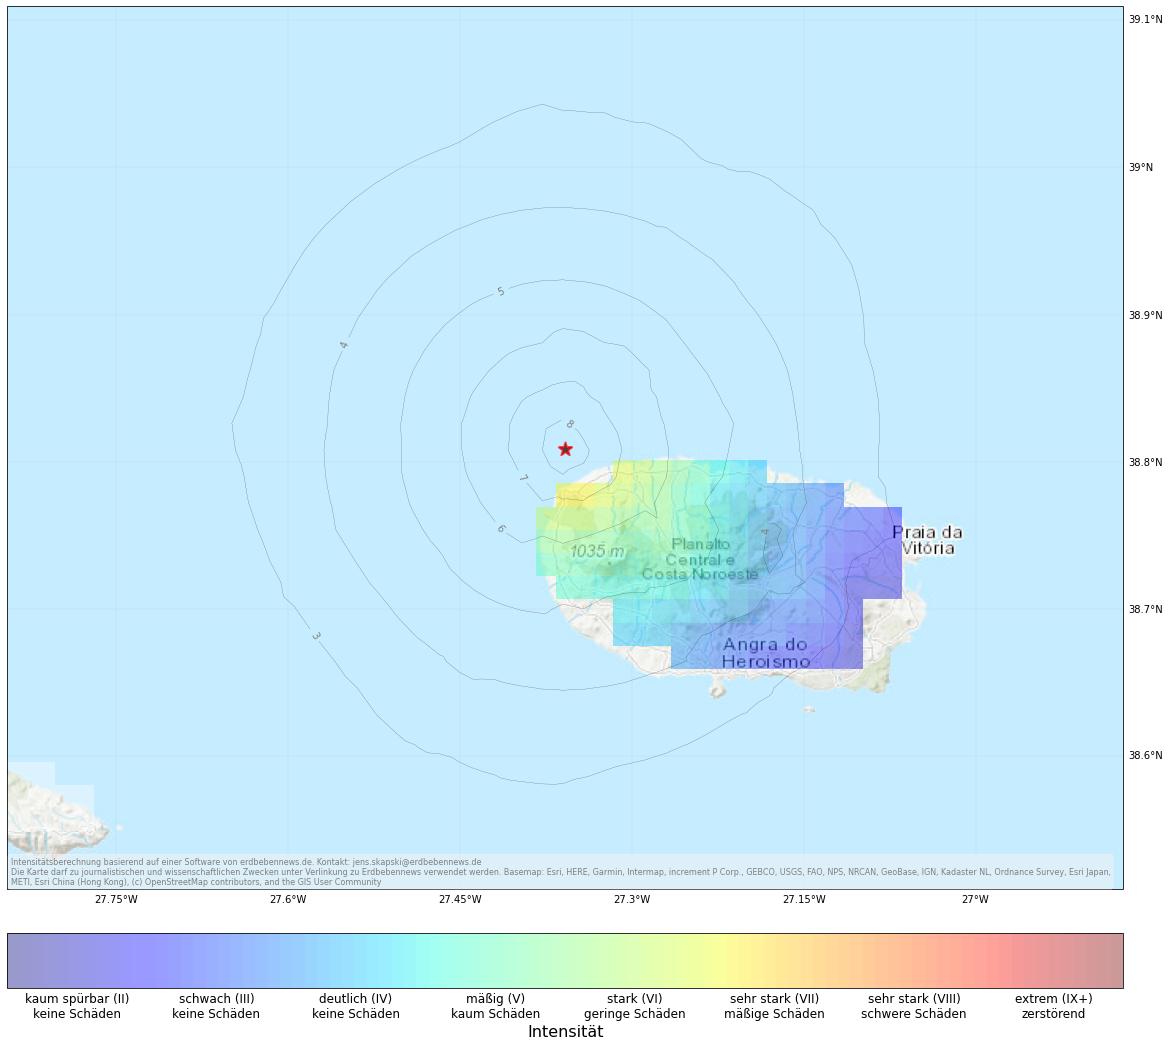 Berechnete Intensität (ShakeMap) des Erdbebens der Stärke 4.5 am 14. Januar, 9:19 Uhr in Portugal